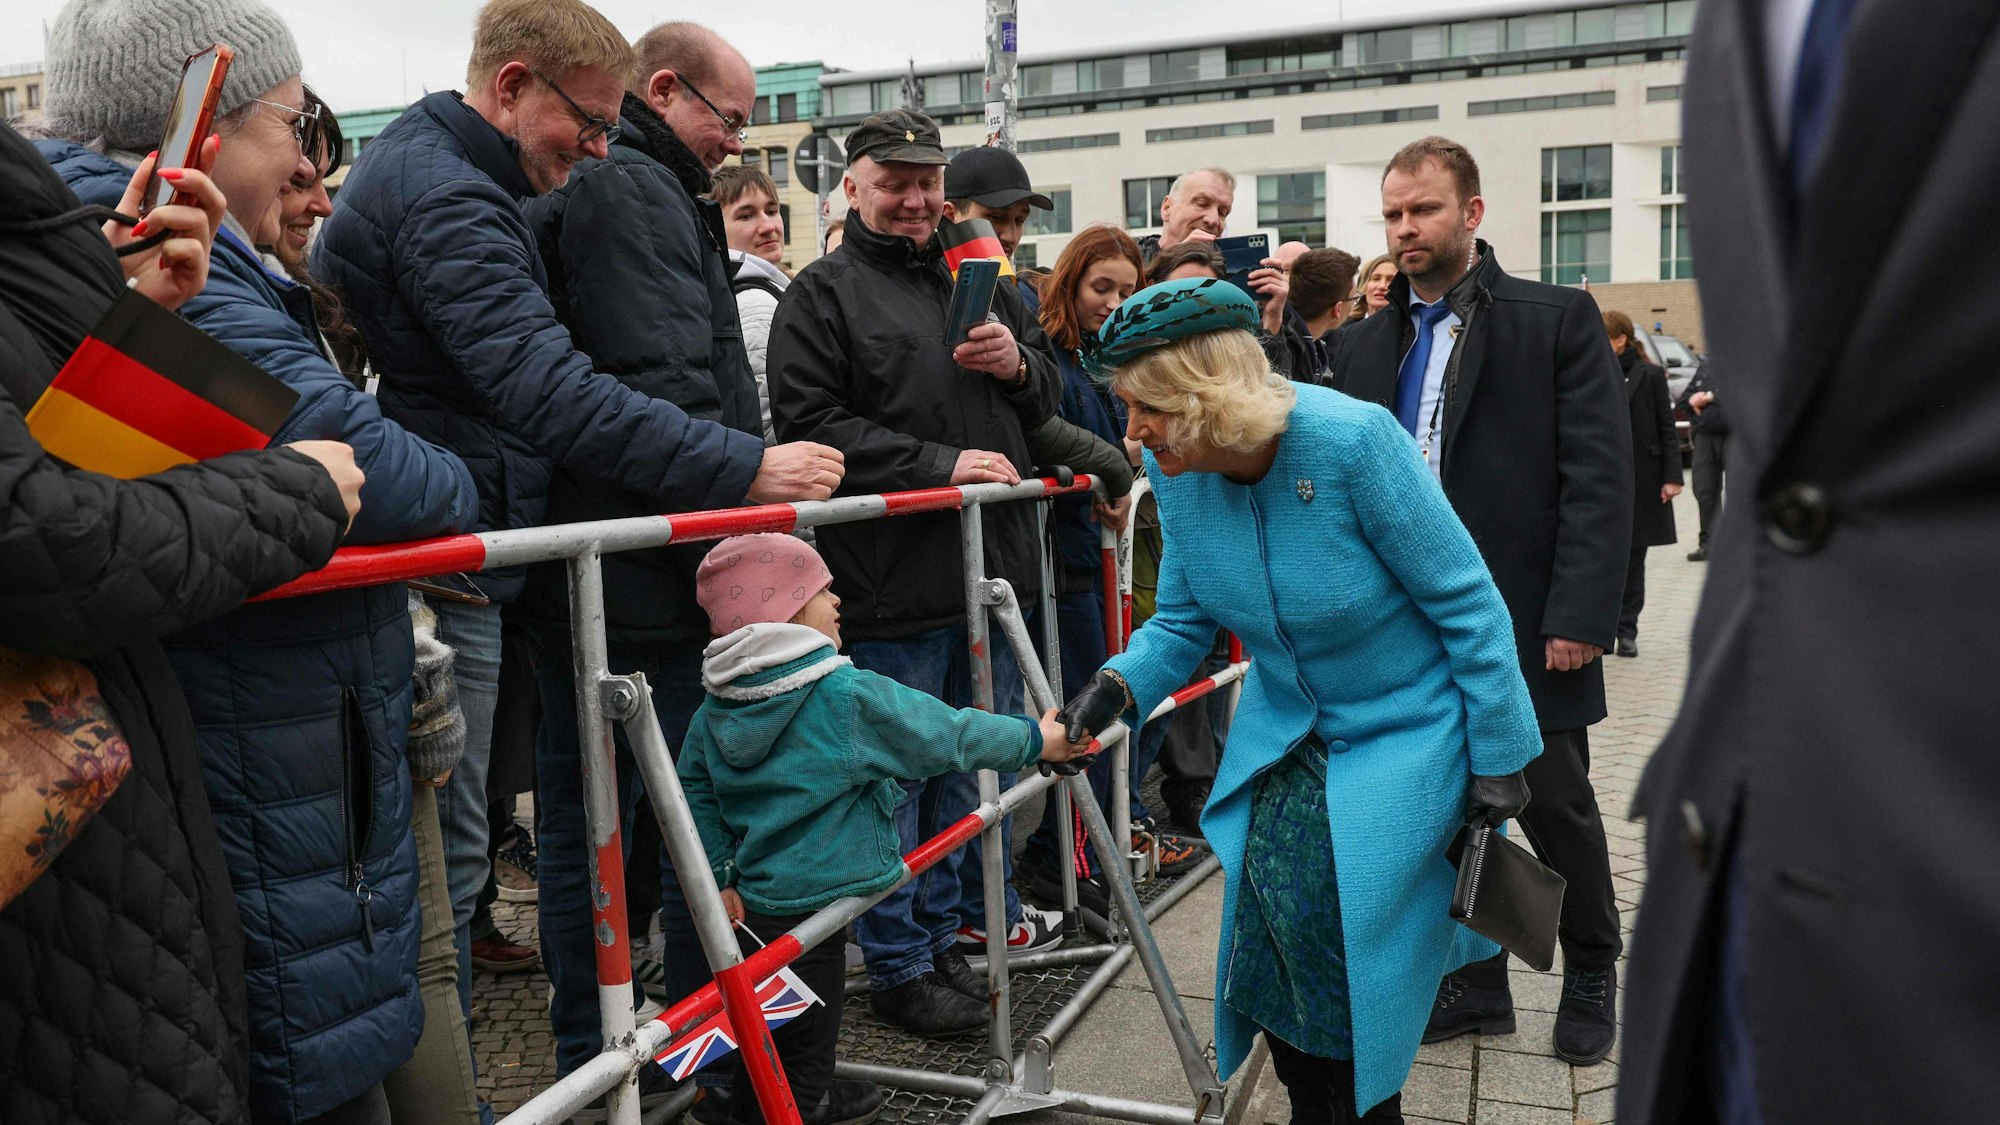 Königsgemahlin Camilla schüttelt beim Besuch in Berlin einem jungen Royal-Fan die Hand.